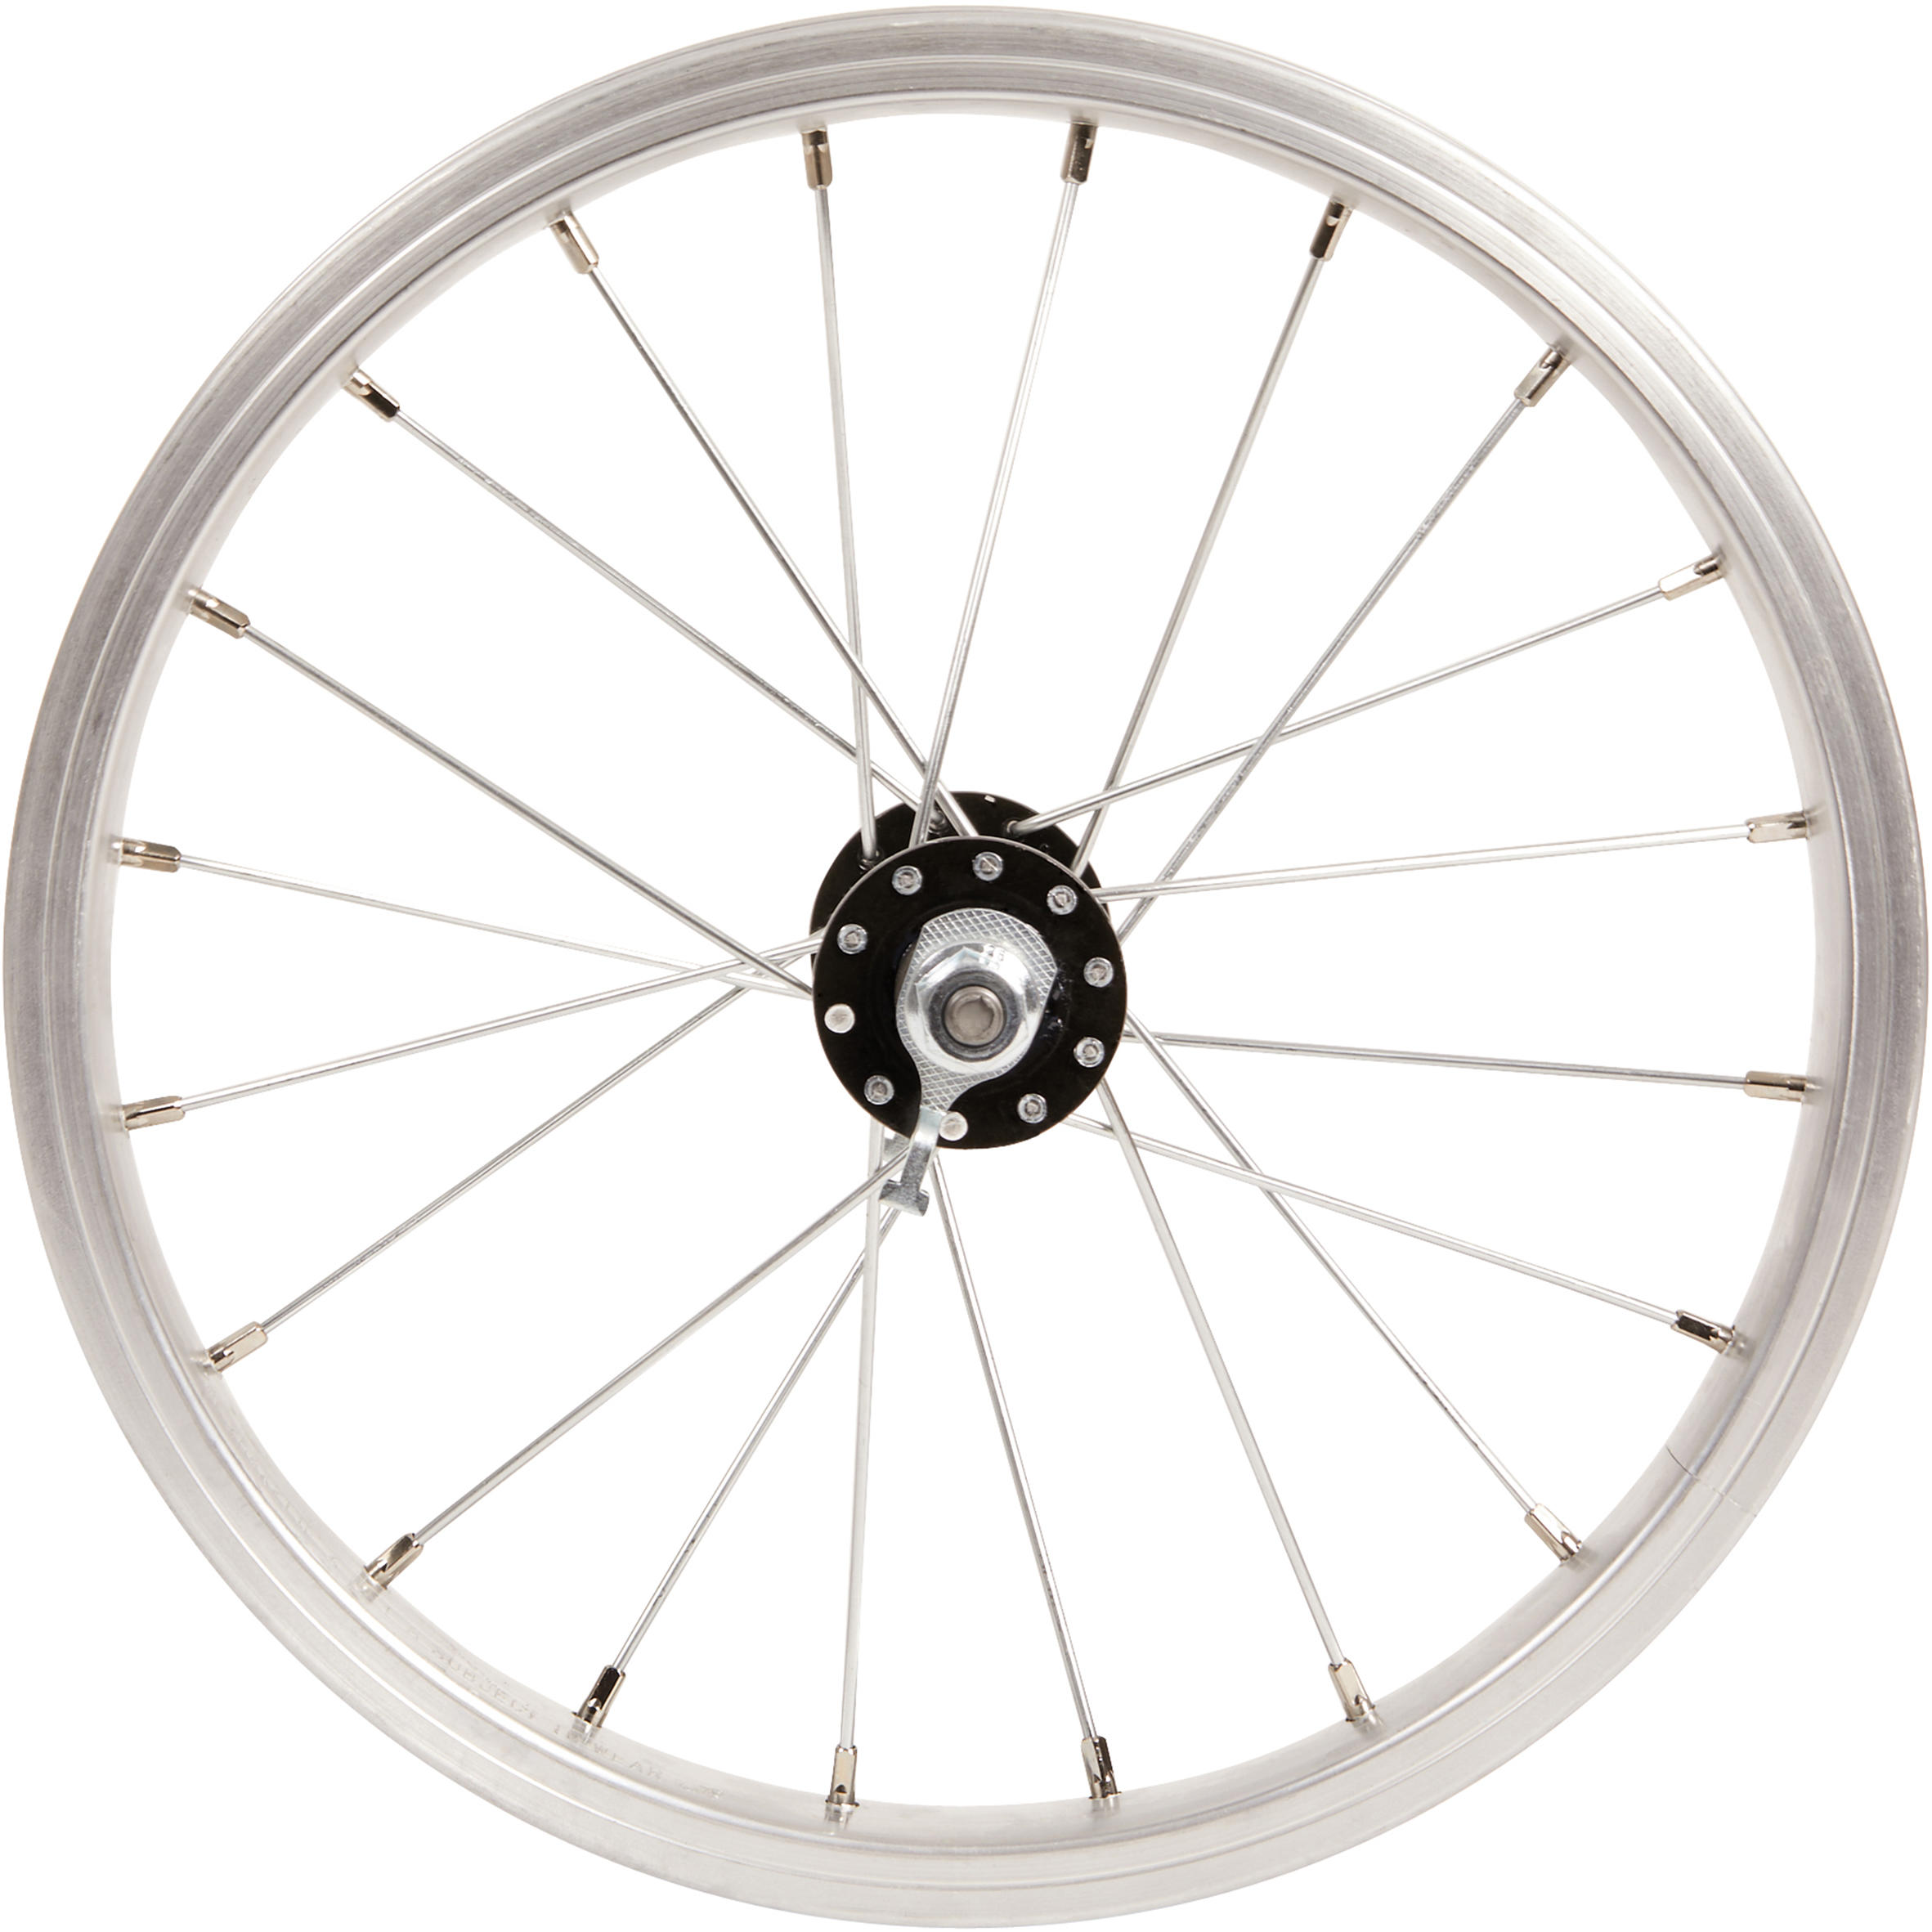 14 bicycle wheels